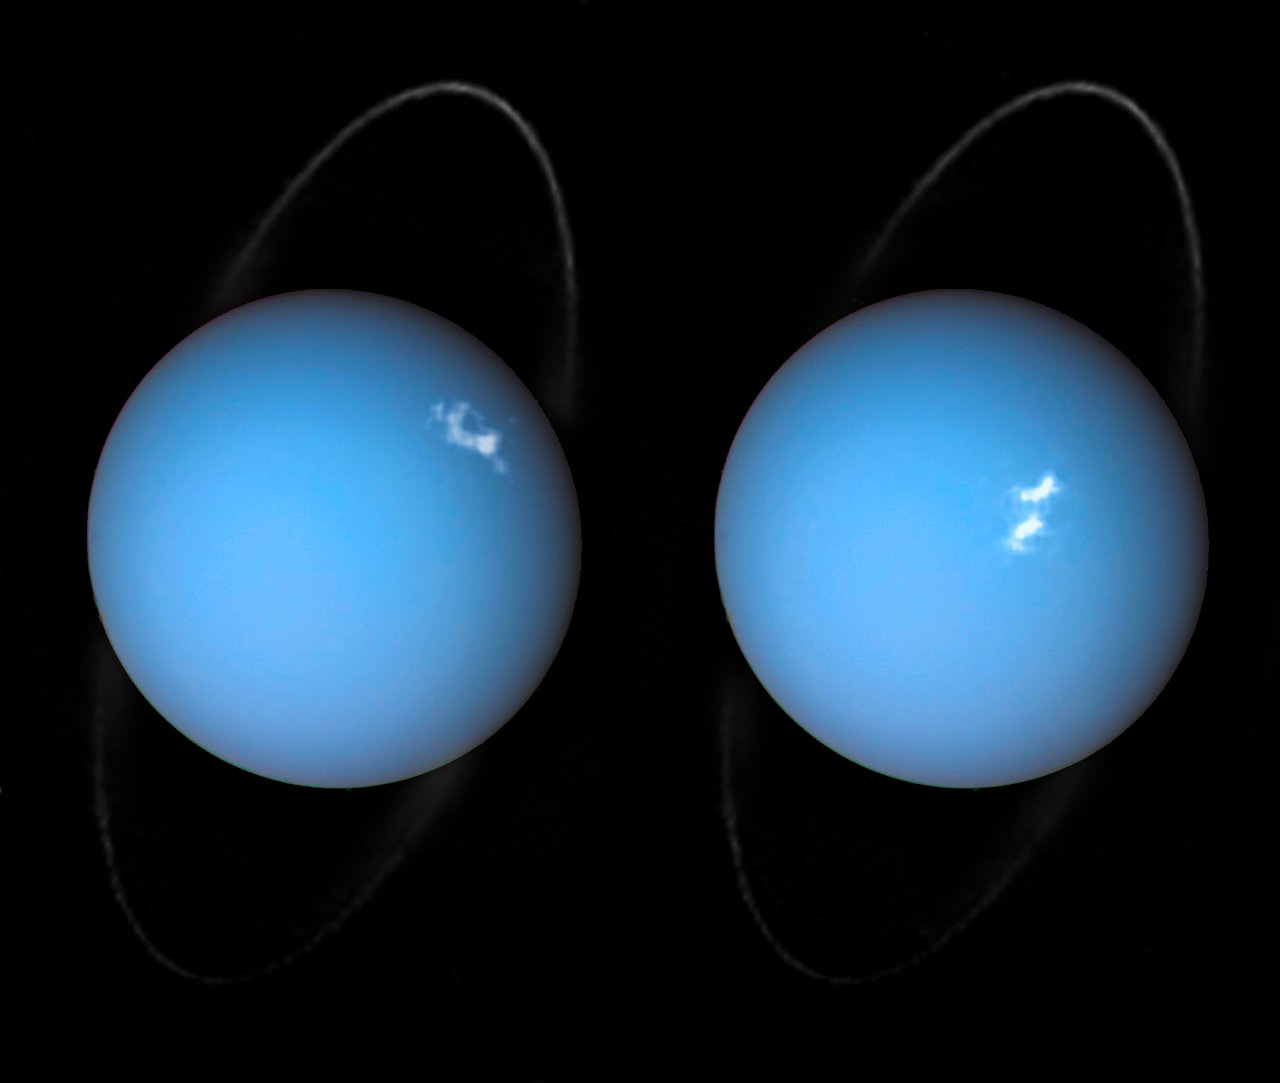 Uranus aurorae in 2014